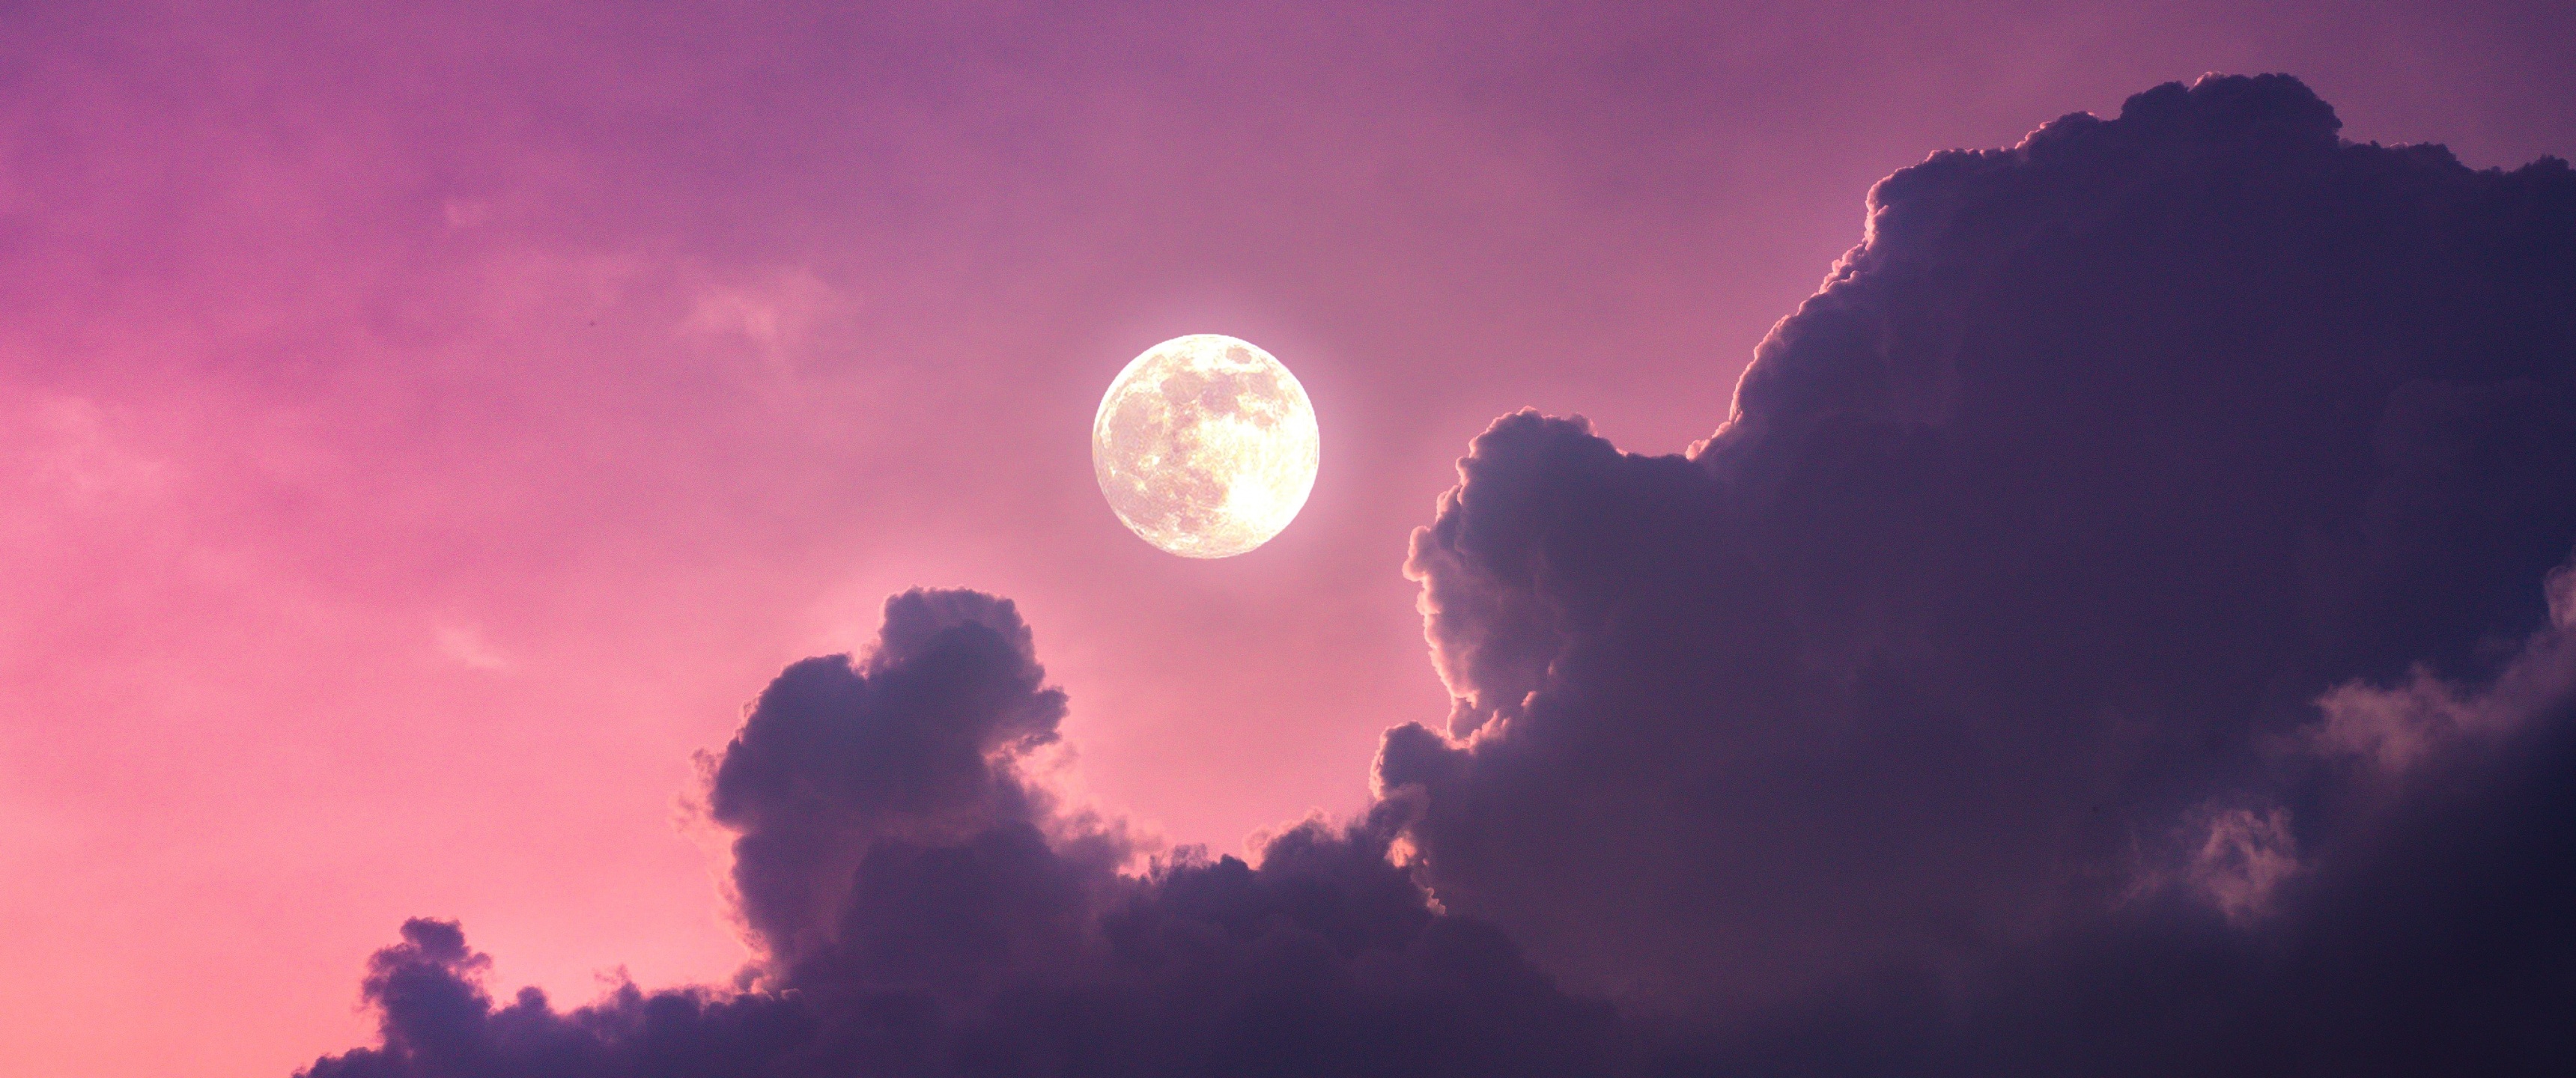 Full moon: Trải nghiệm một đêm đầy lãng mạn với bức ảnh Full moon nghệ thuật. Hình ảnh sẽ làm chúng ta ngỡ như đang trông ngóng cùng với vầng trăng tròn trên bầu trời đầy sao.